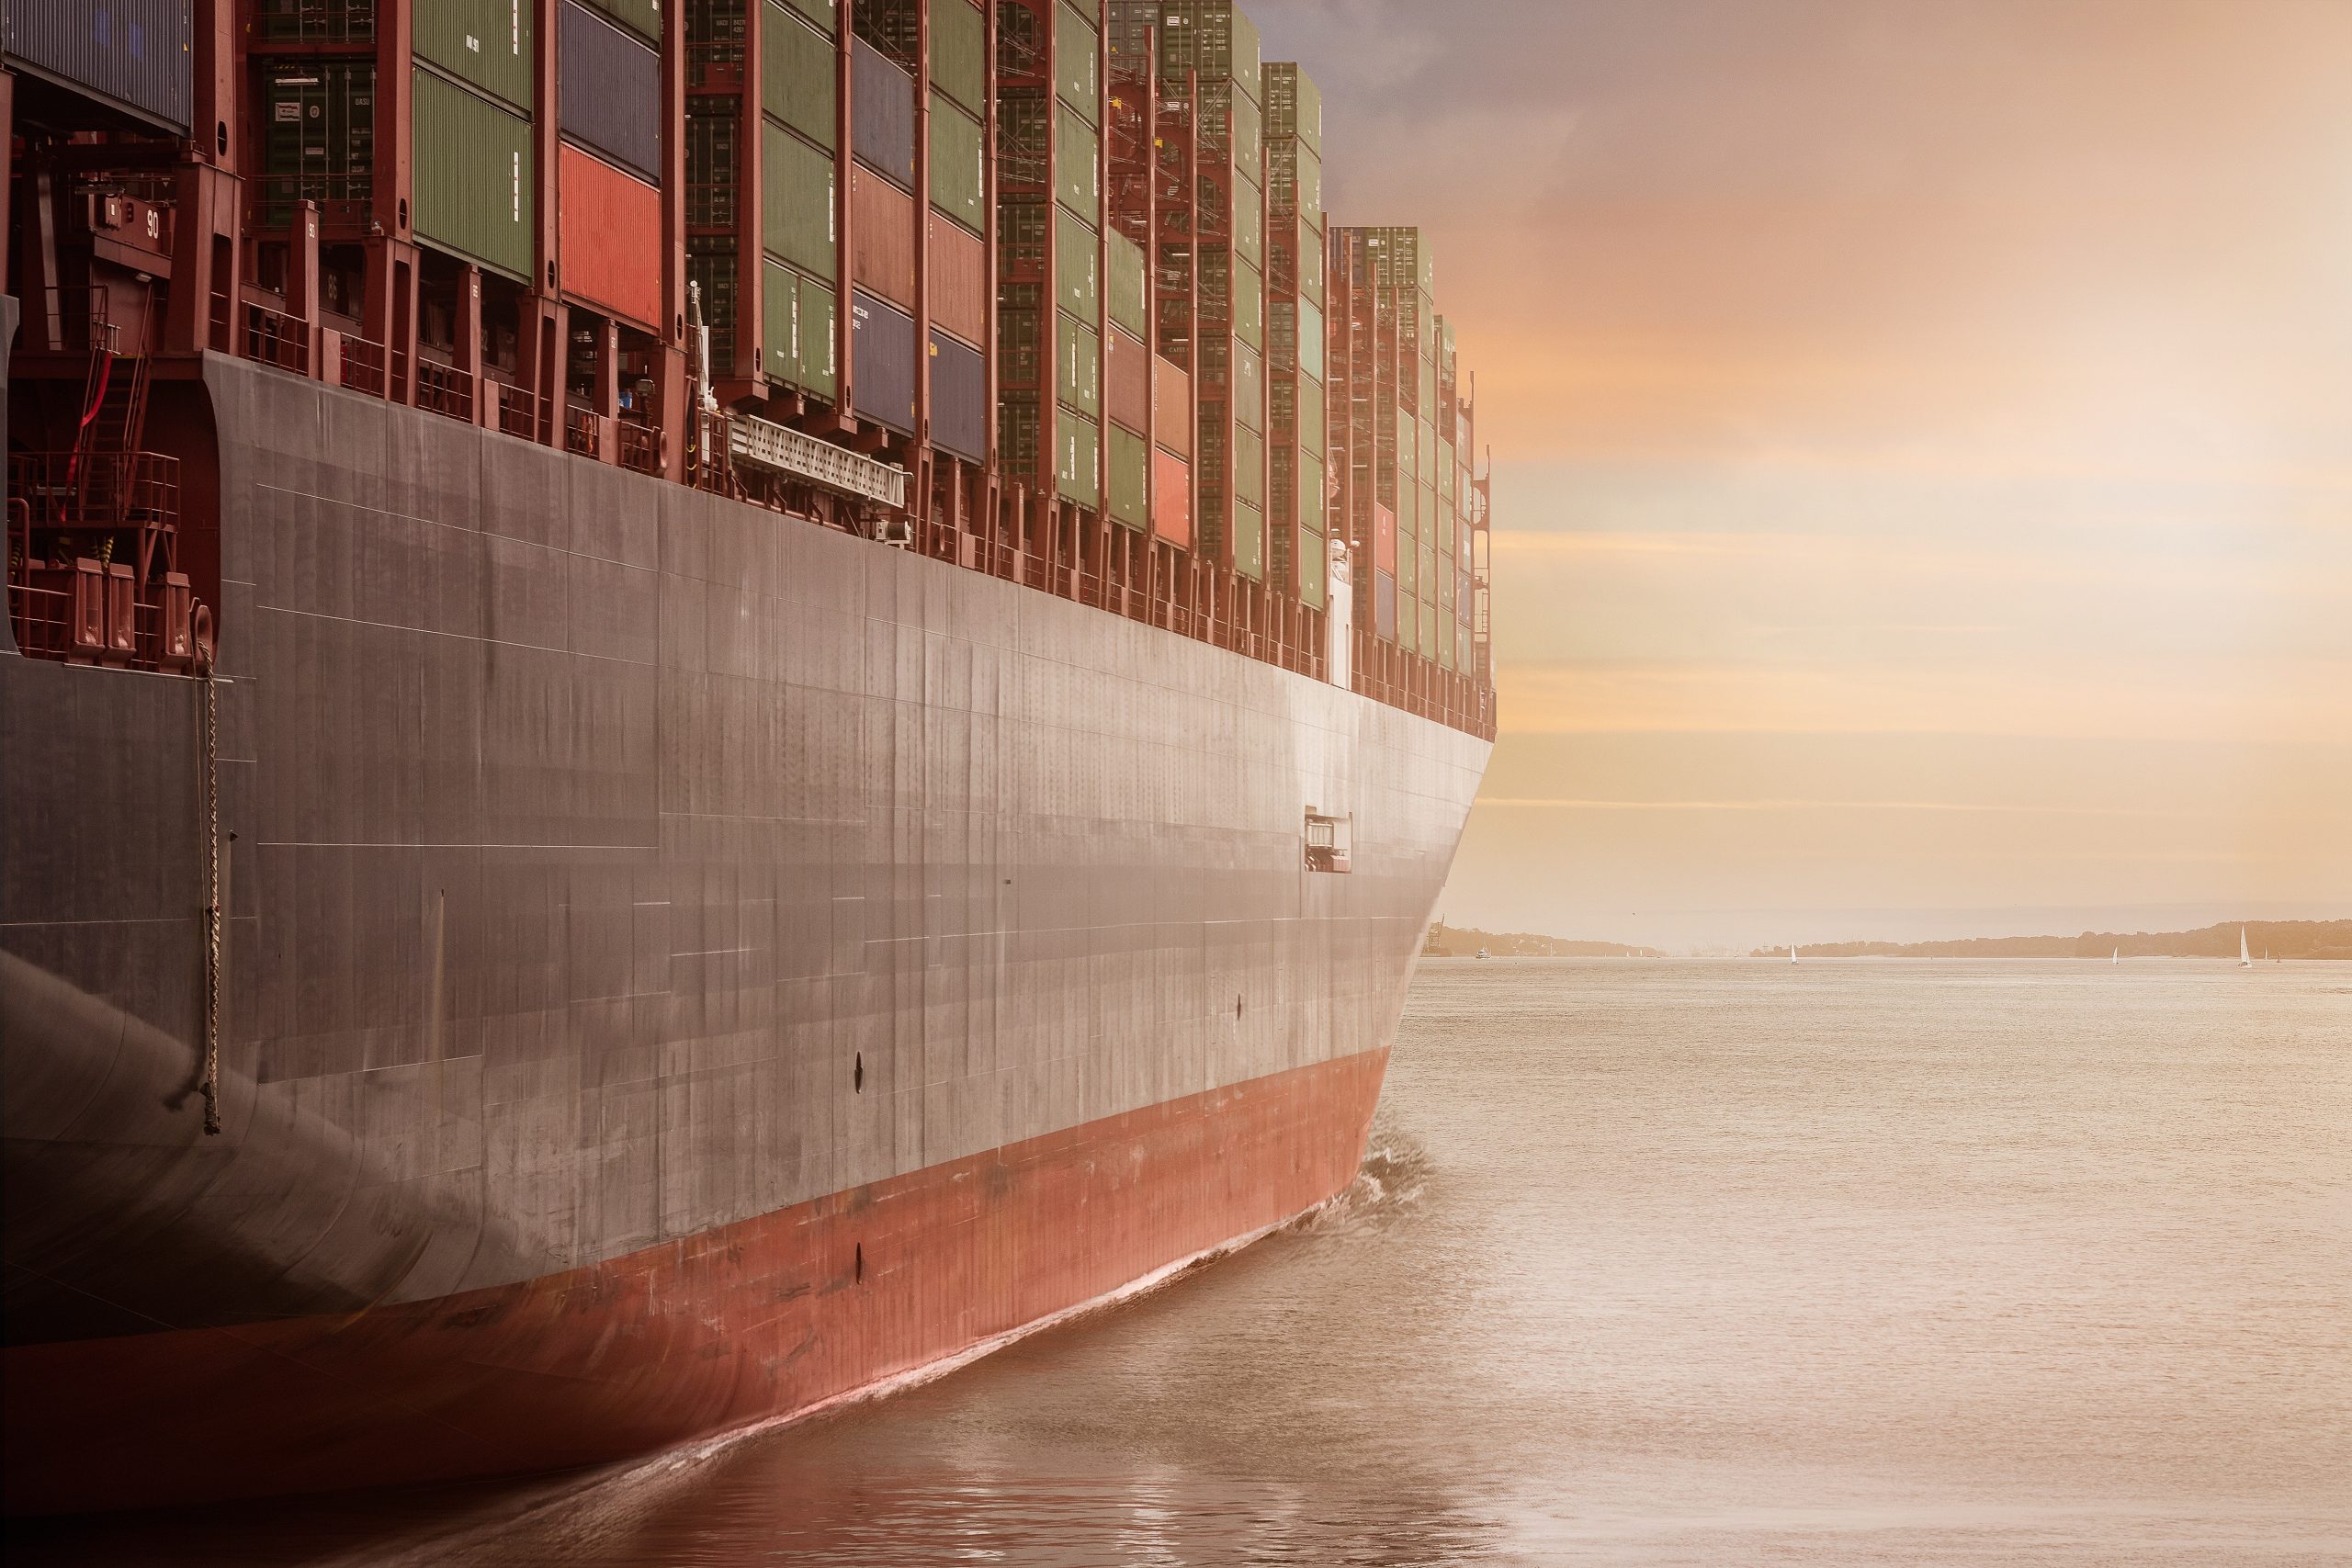 Εμπορευματοκιβώτια: Οι ναυτιλιακές αποφεύγουν την Ερυθρά Θάλασσα